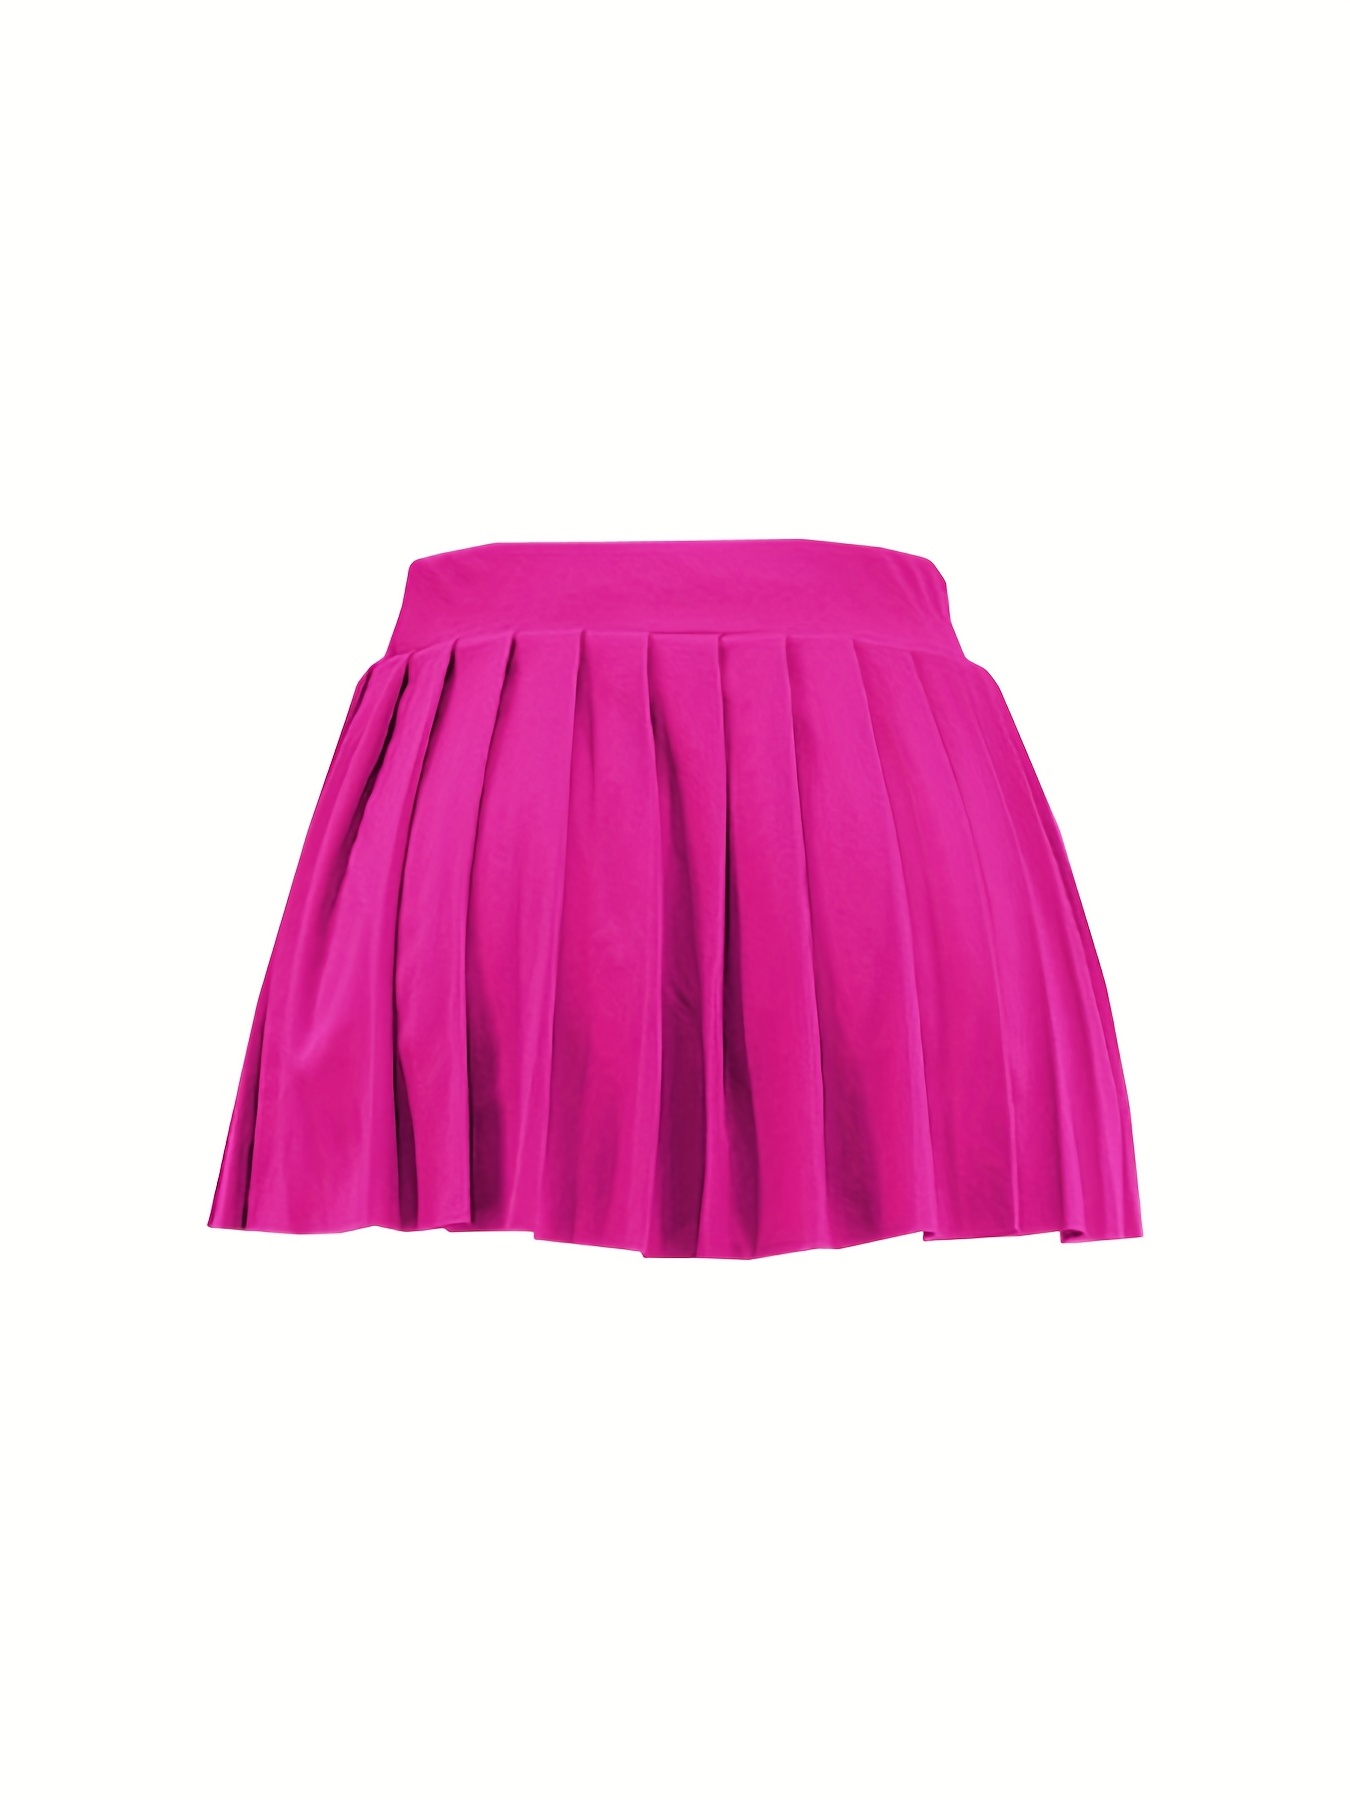 Flared mini skirt, Skirts, Women's